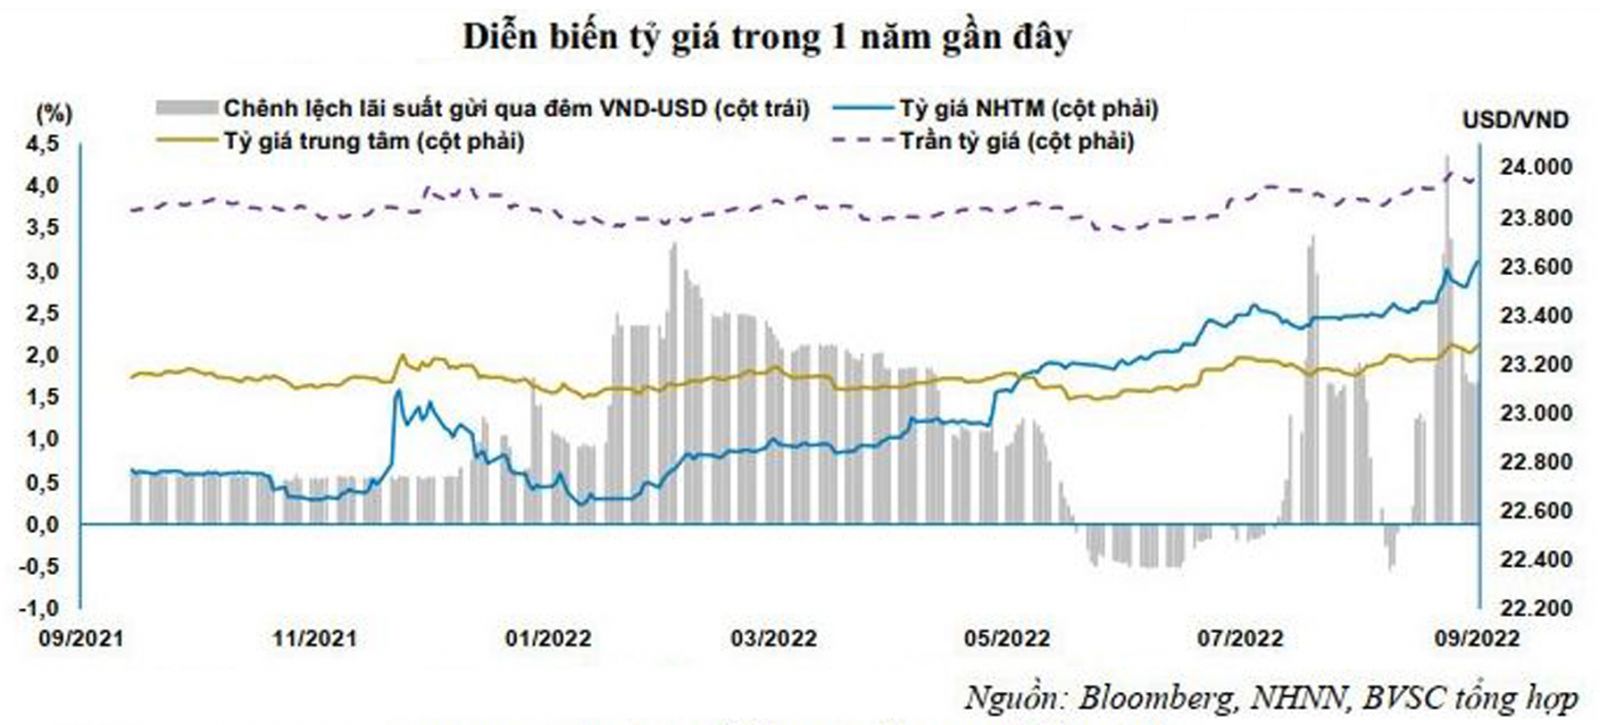  Tỷ giá USD/VND đang chịu áp lực tăng sau khi FED tiếp tục tăng lãi suất.